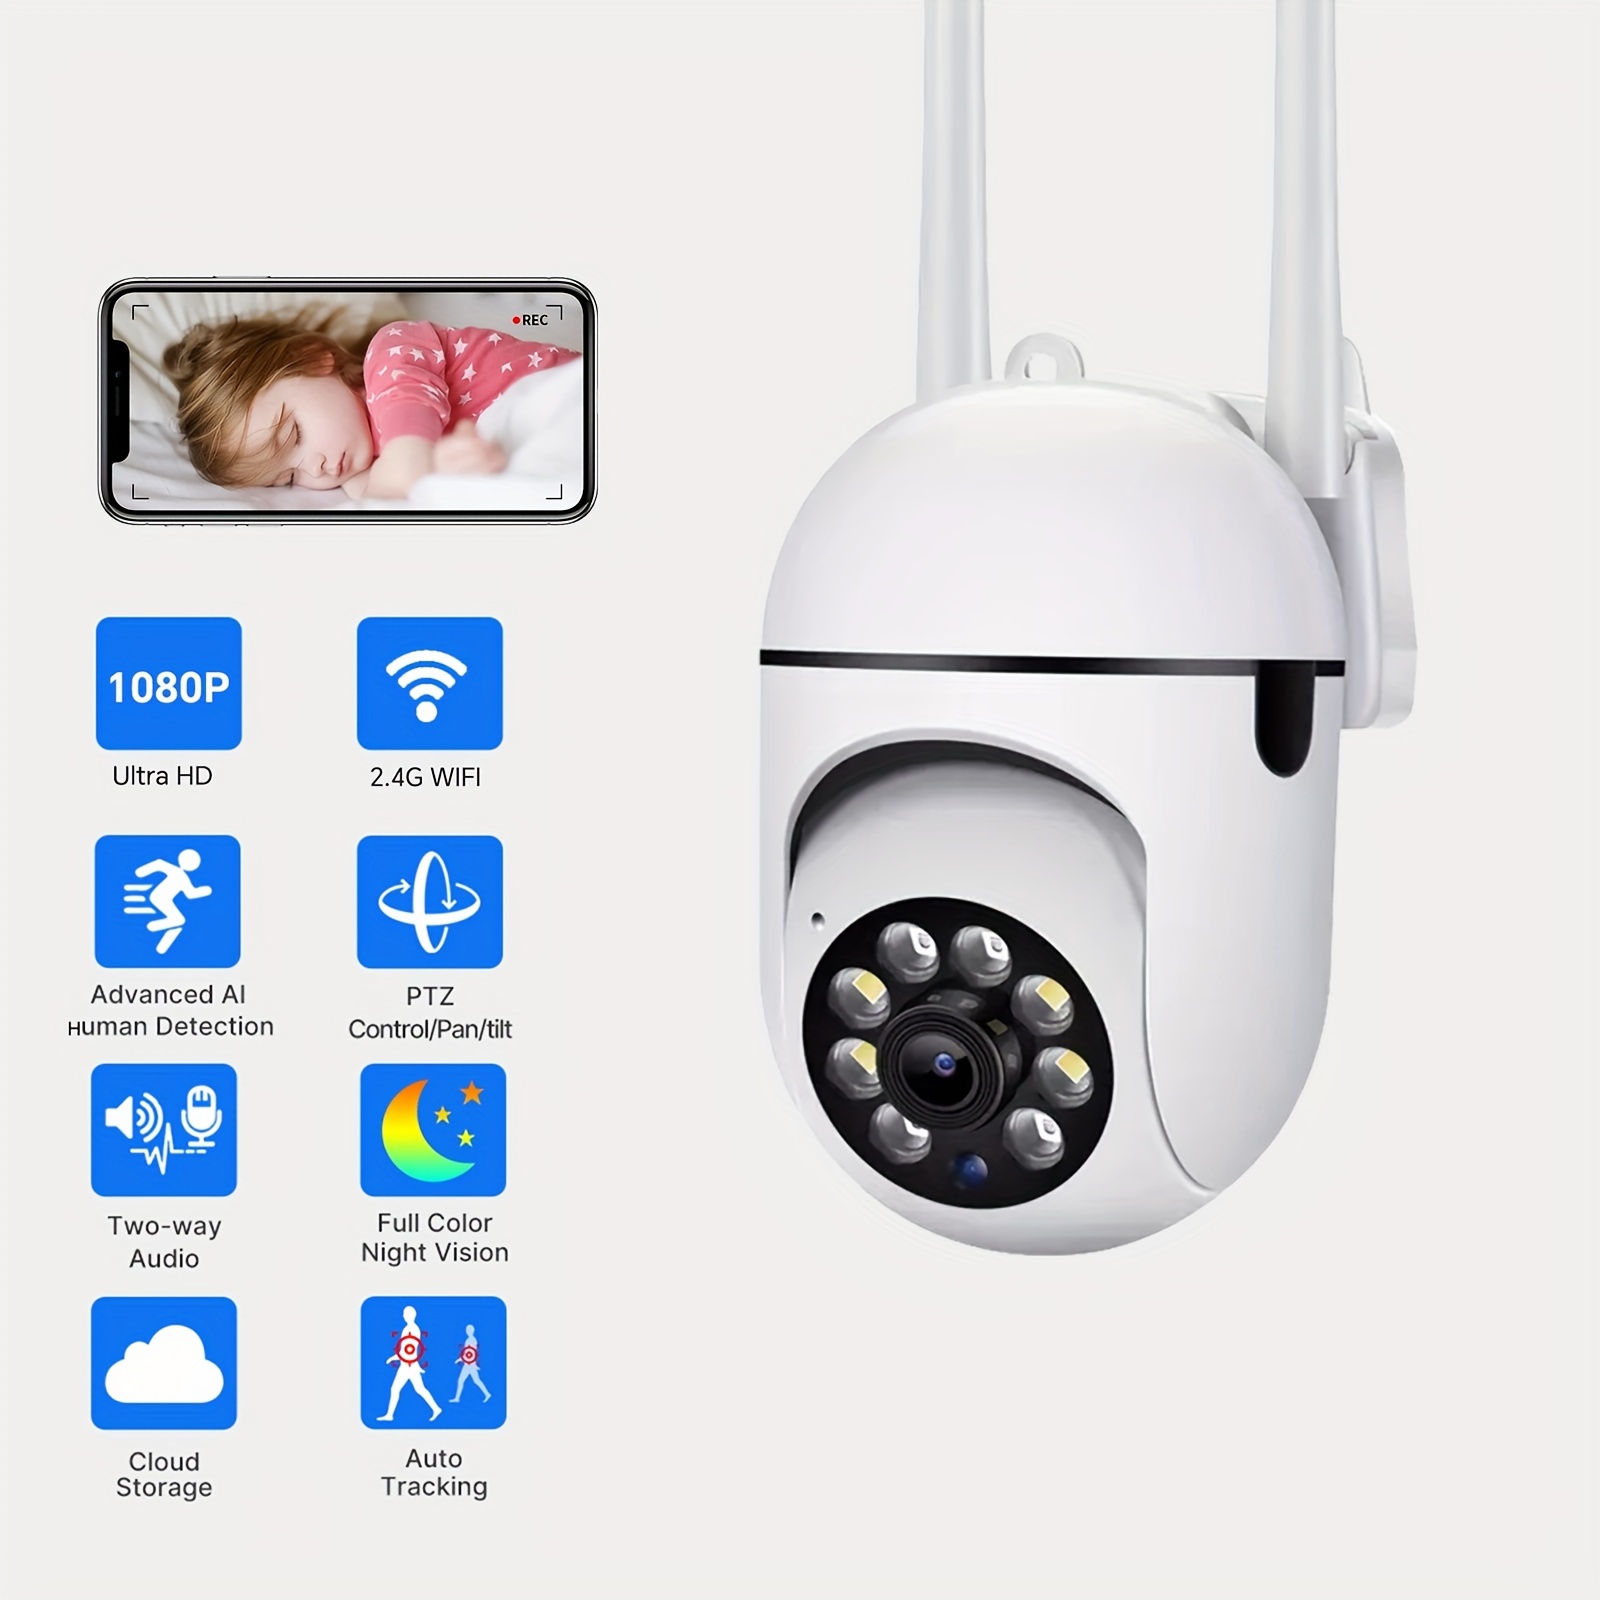  Naroote Monitor de bebé, cámara de seguridad de vigilancia  Exterieur inalámbrica WiFi cámara 120 ° gran angular 720 p mini sistema de  vigilancia para bebés ancianos : Electrónica